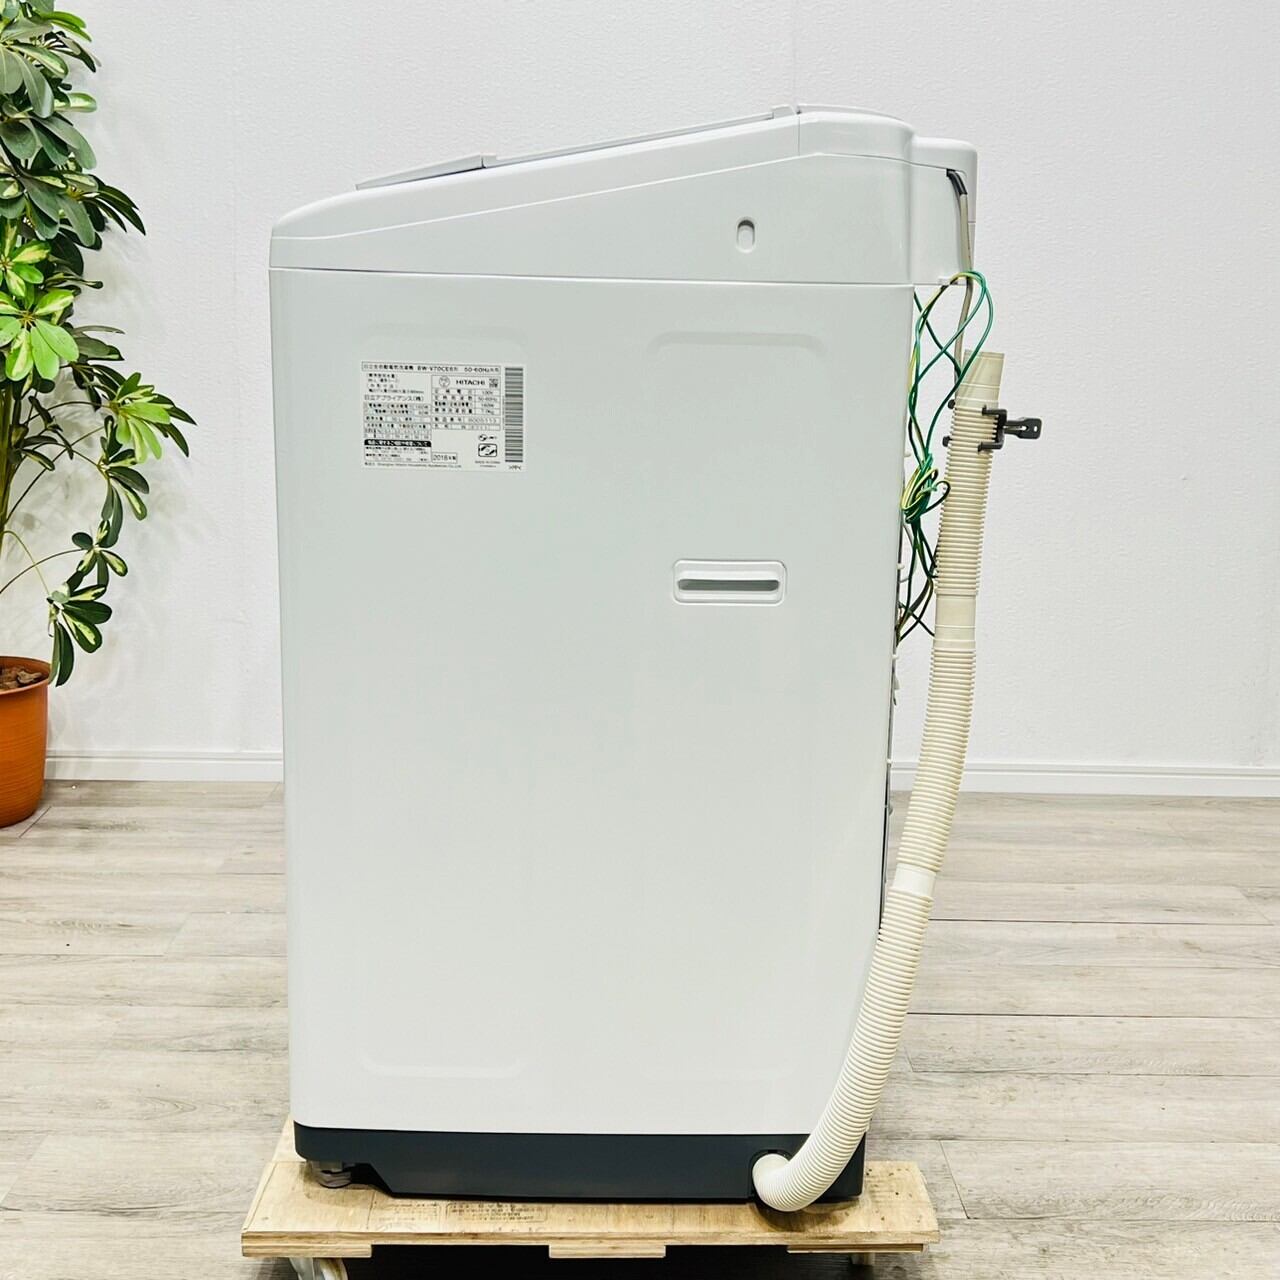 ♦️HITACHI a1821 洗濯機 7.0kg 2018年製 9♦️ | ネットでリサイクル ...